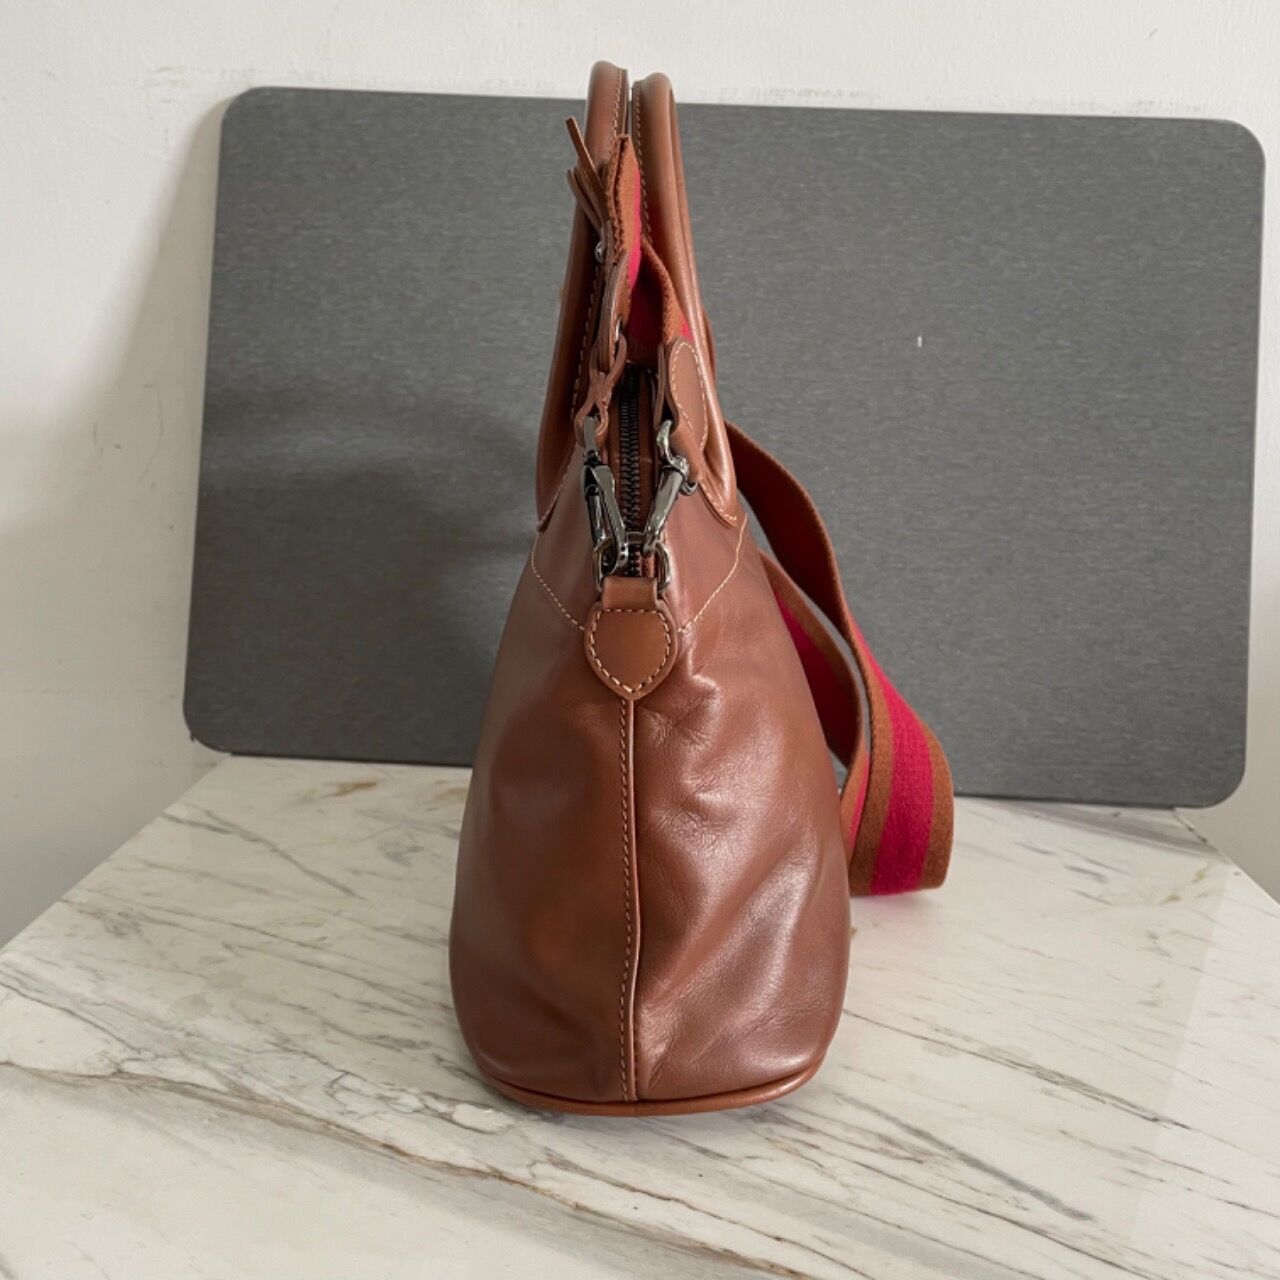 Longchamp Dome Brown Leather Handbag